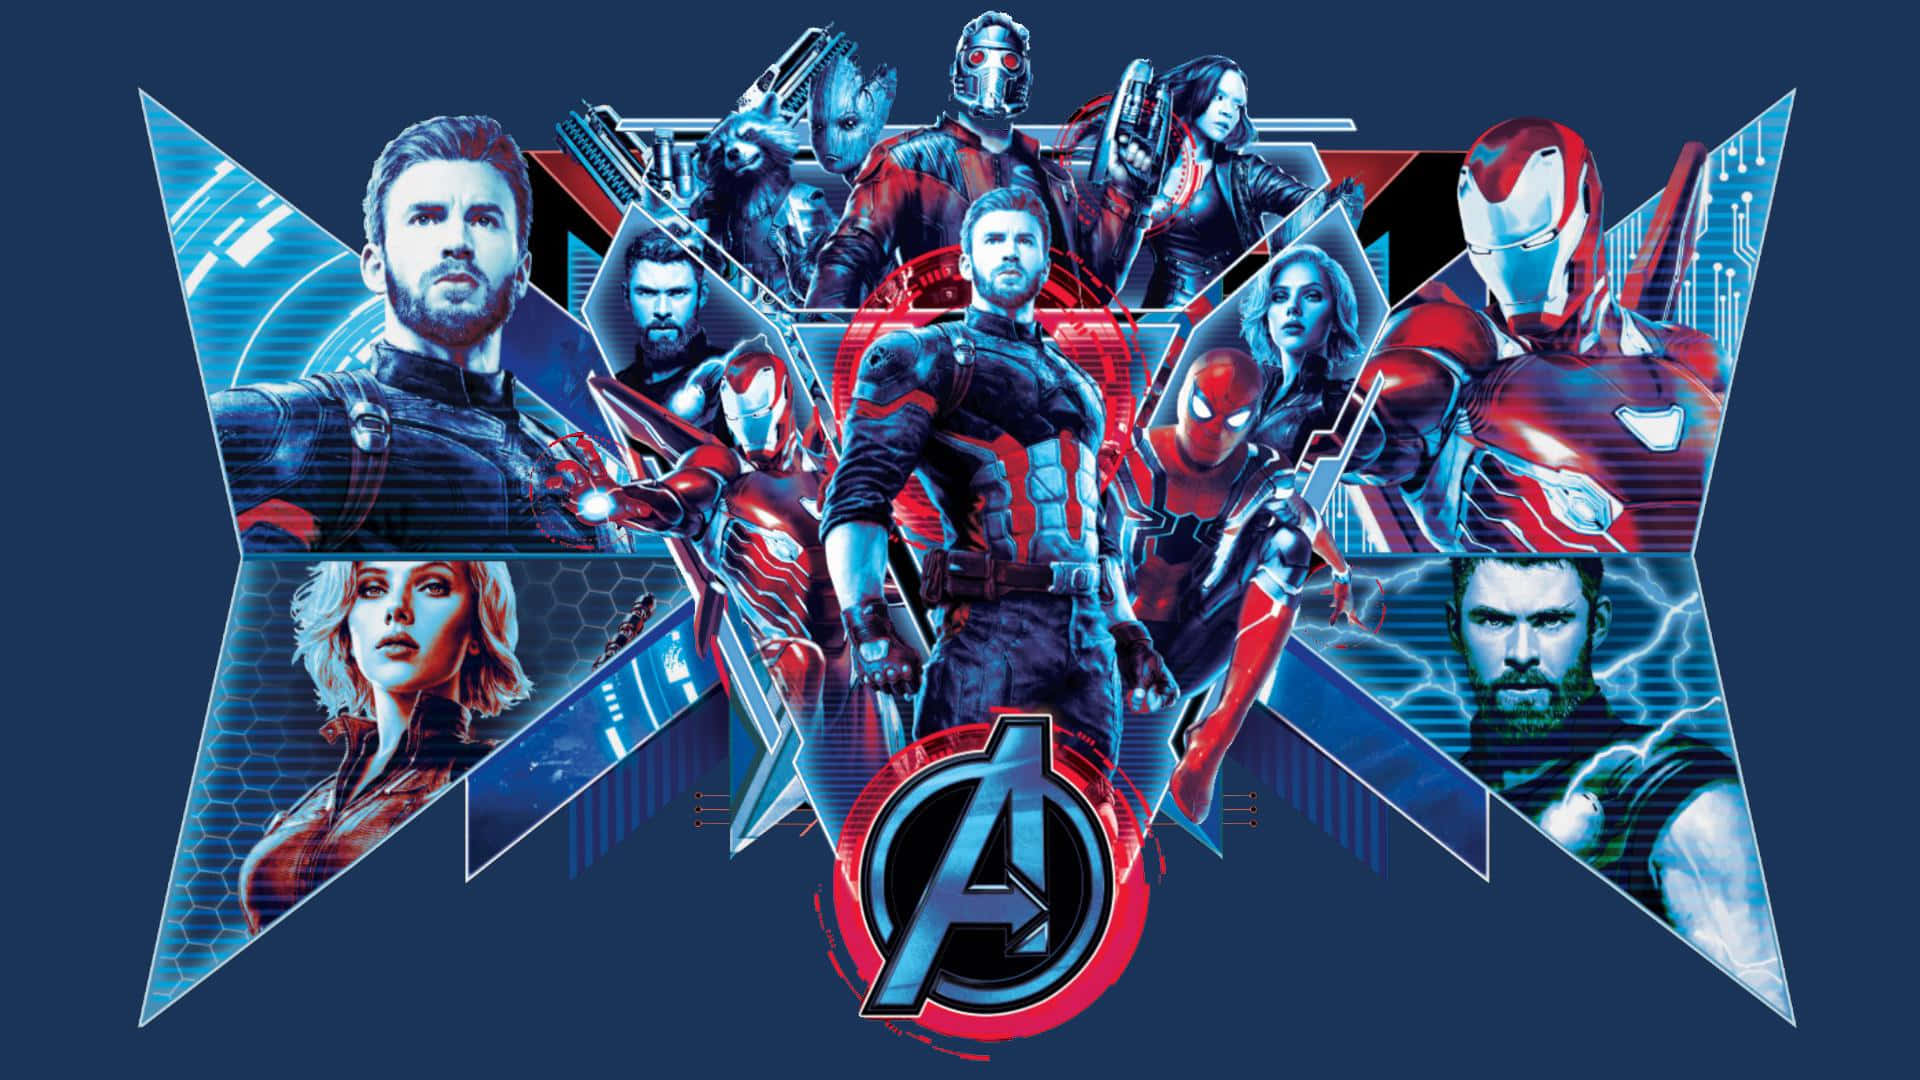 Erlebensie Die Schlacht Zwischen Ultron Und Iron Man In Marvel's Avengers: Infinity War